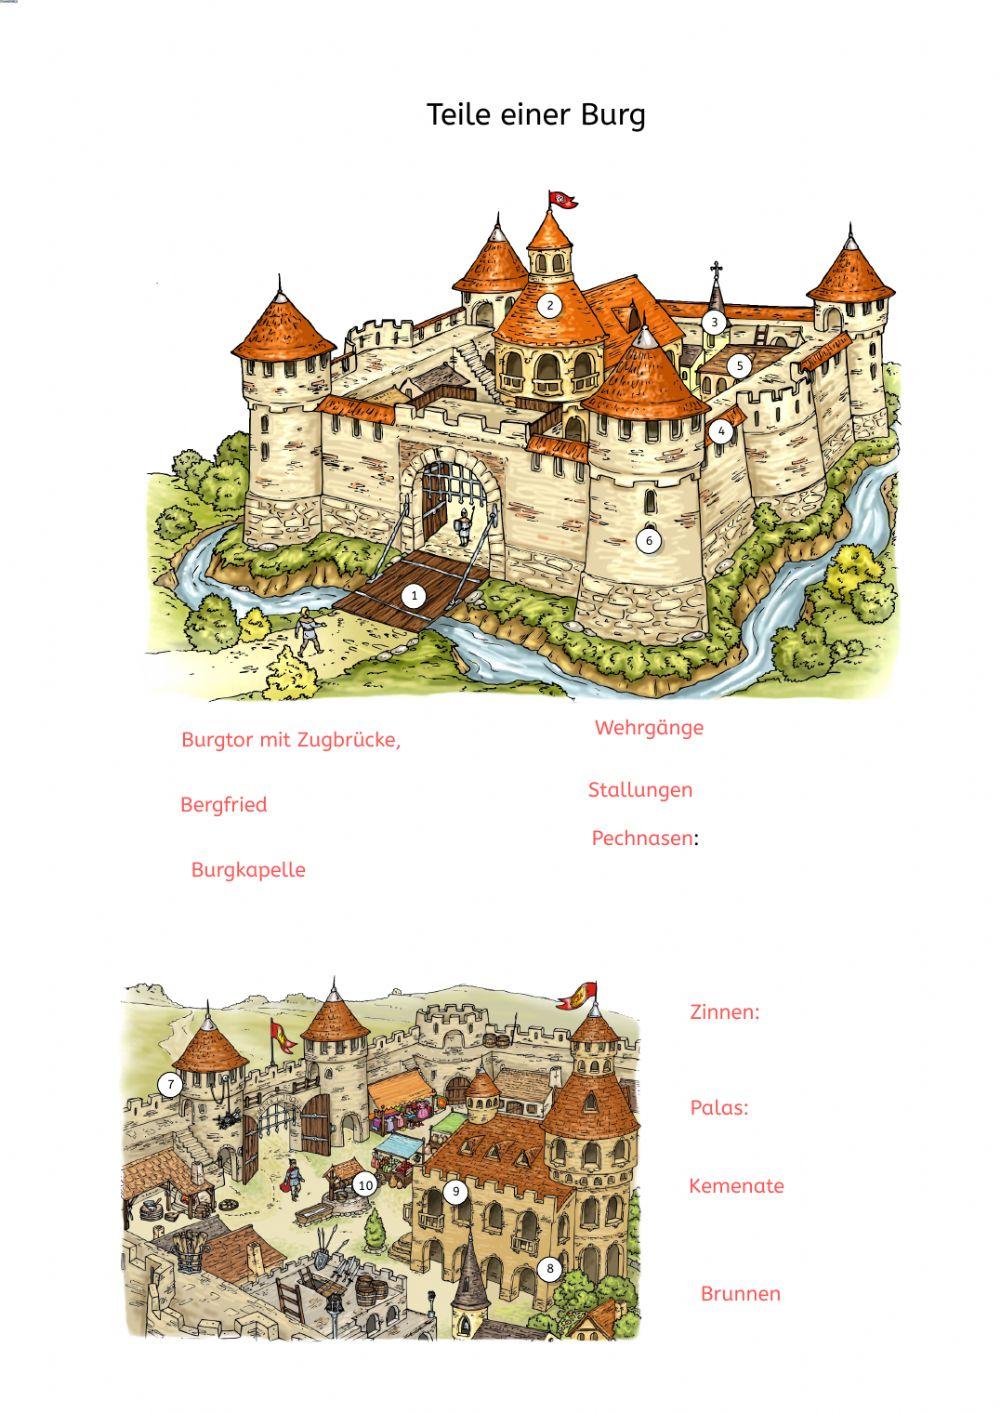 Teile der Burg